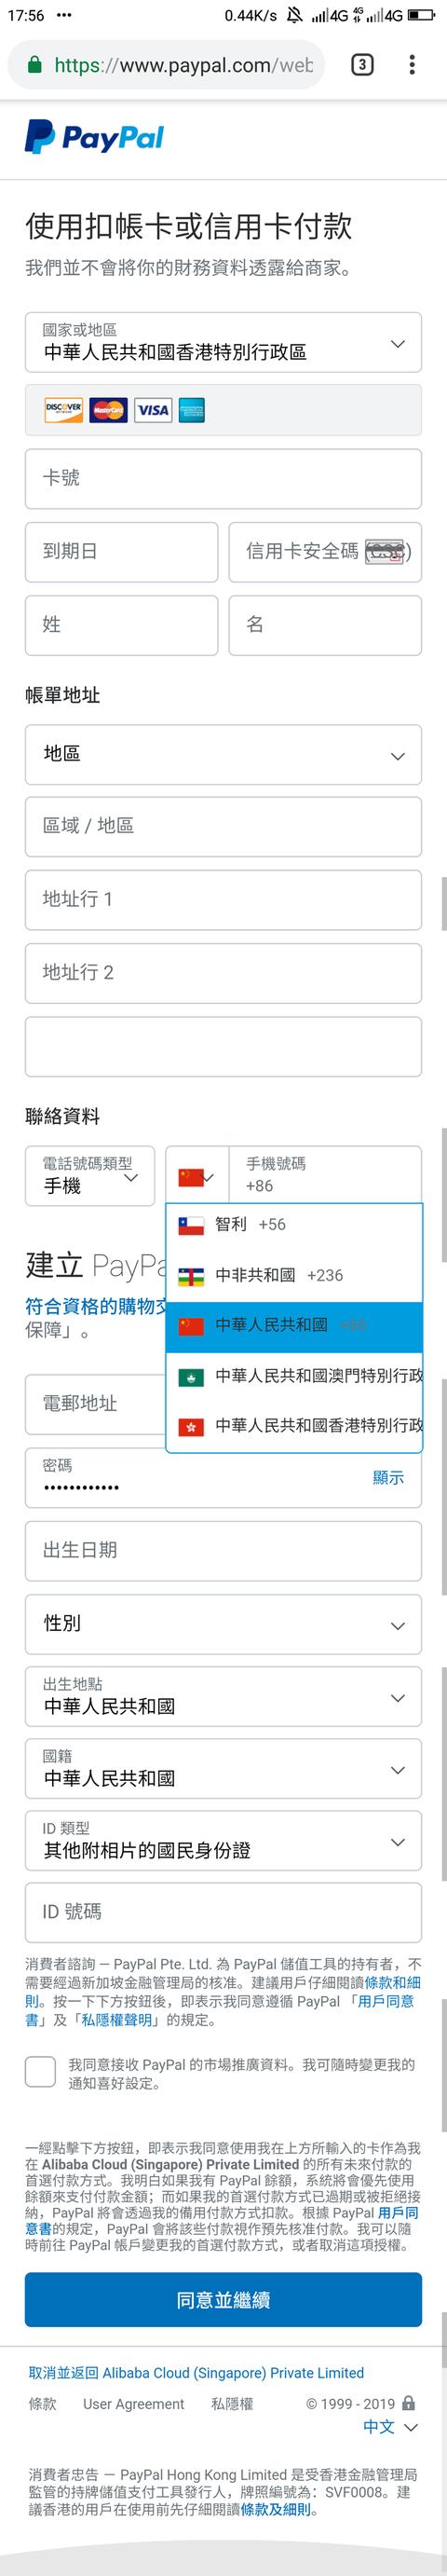 境外paypal账户注册（注册香港PayPal并绑定大陆手机号方法）(2)